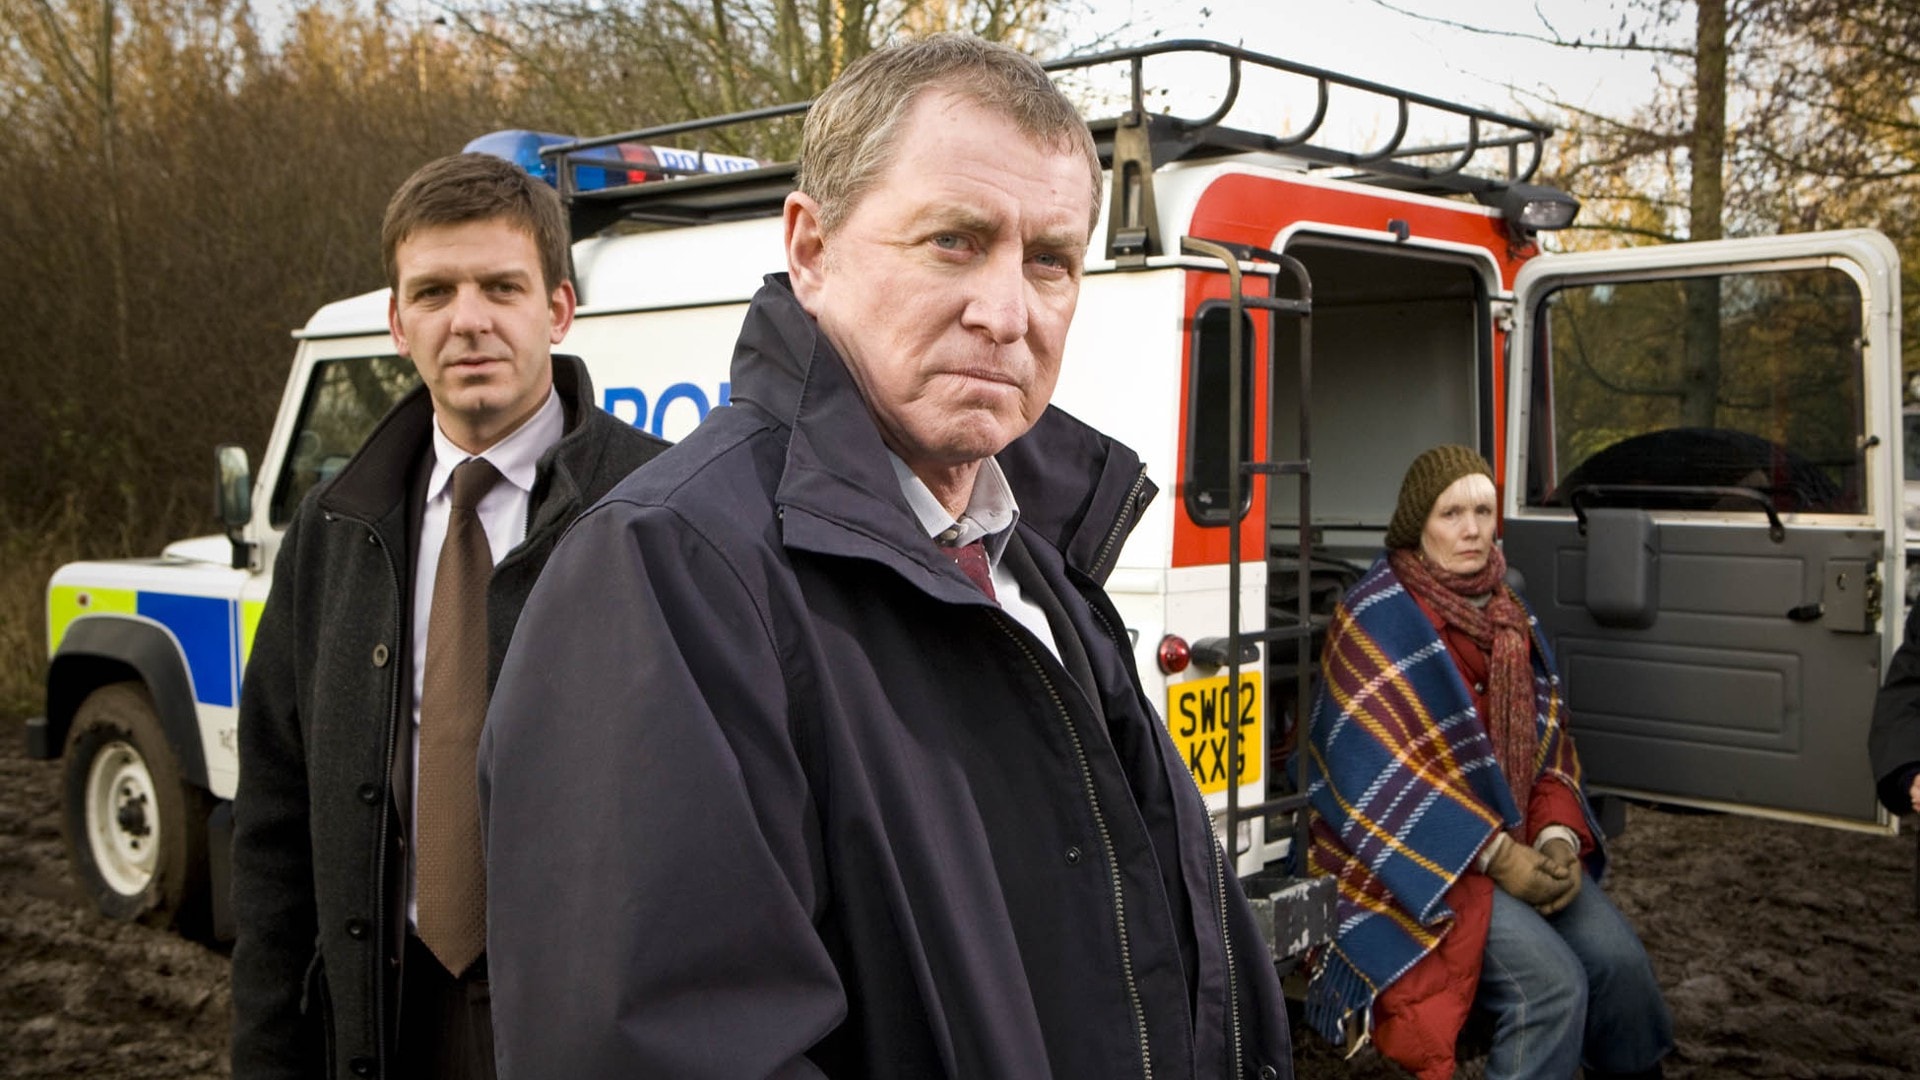 Midsomer Murders - Season 21 Watch Free online streaming on Movies123